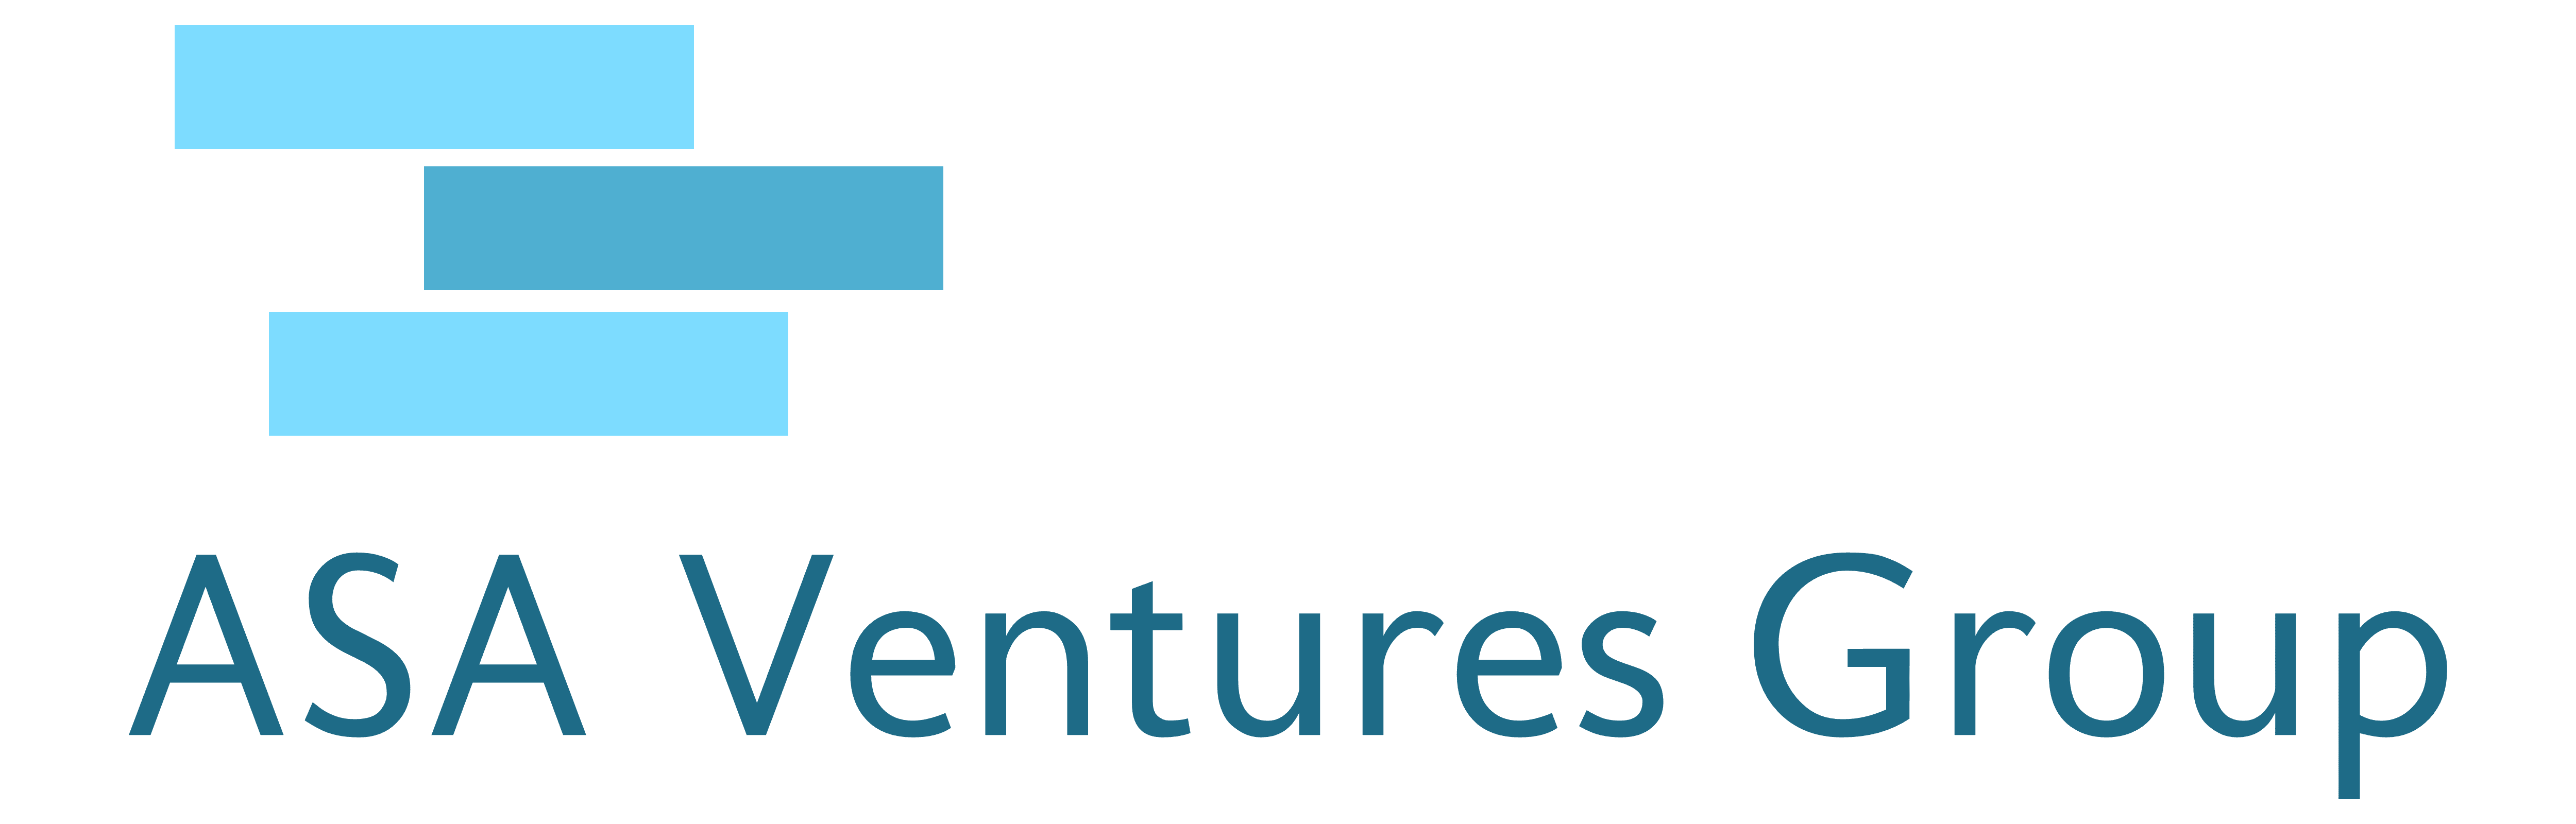 ASA Ventures Group